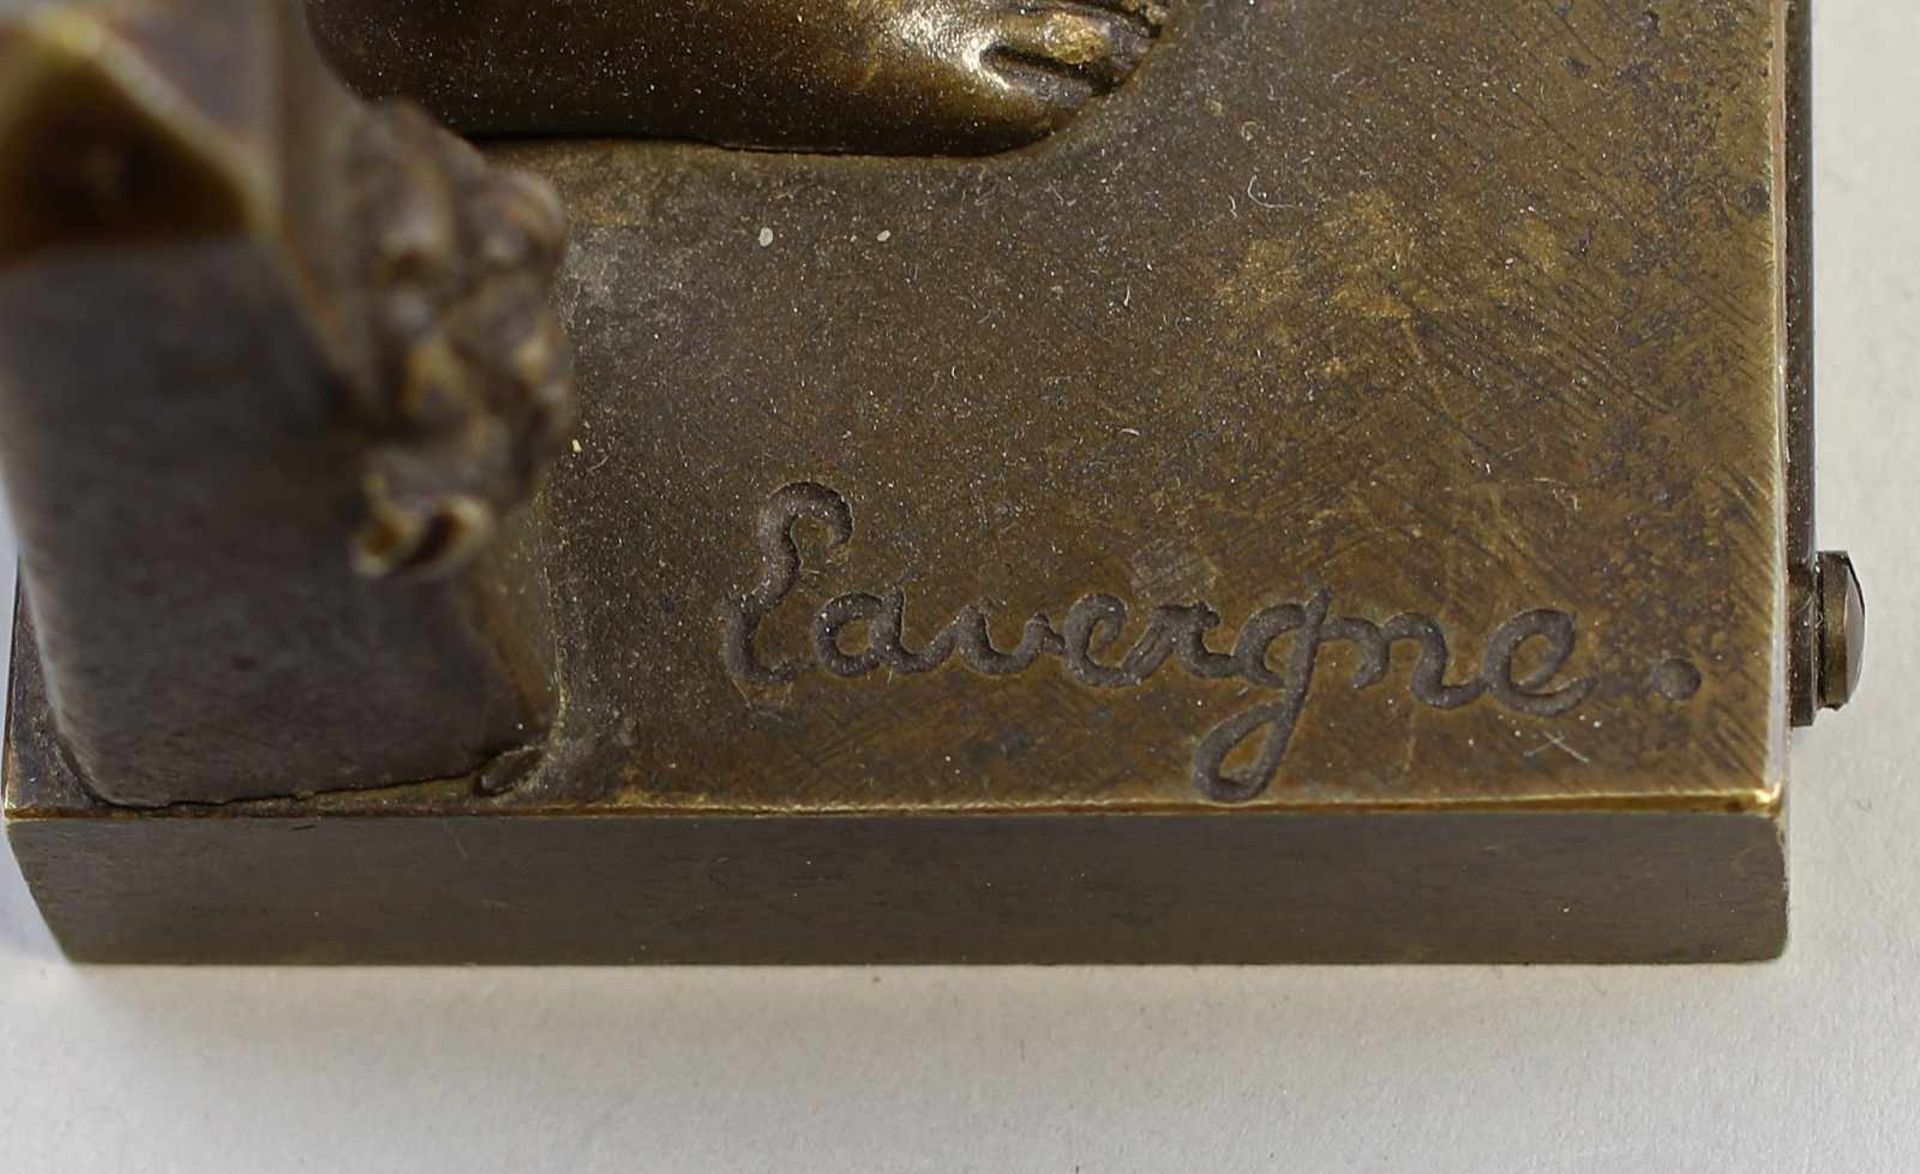 Lavergne, Junger Angler Bronze massiv mit dunkler Patina, am Sockel sign. "Lavergne", Adolphe Jean - Bild 6 aus 7